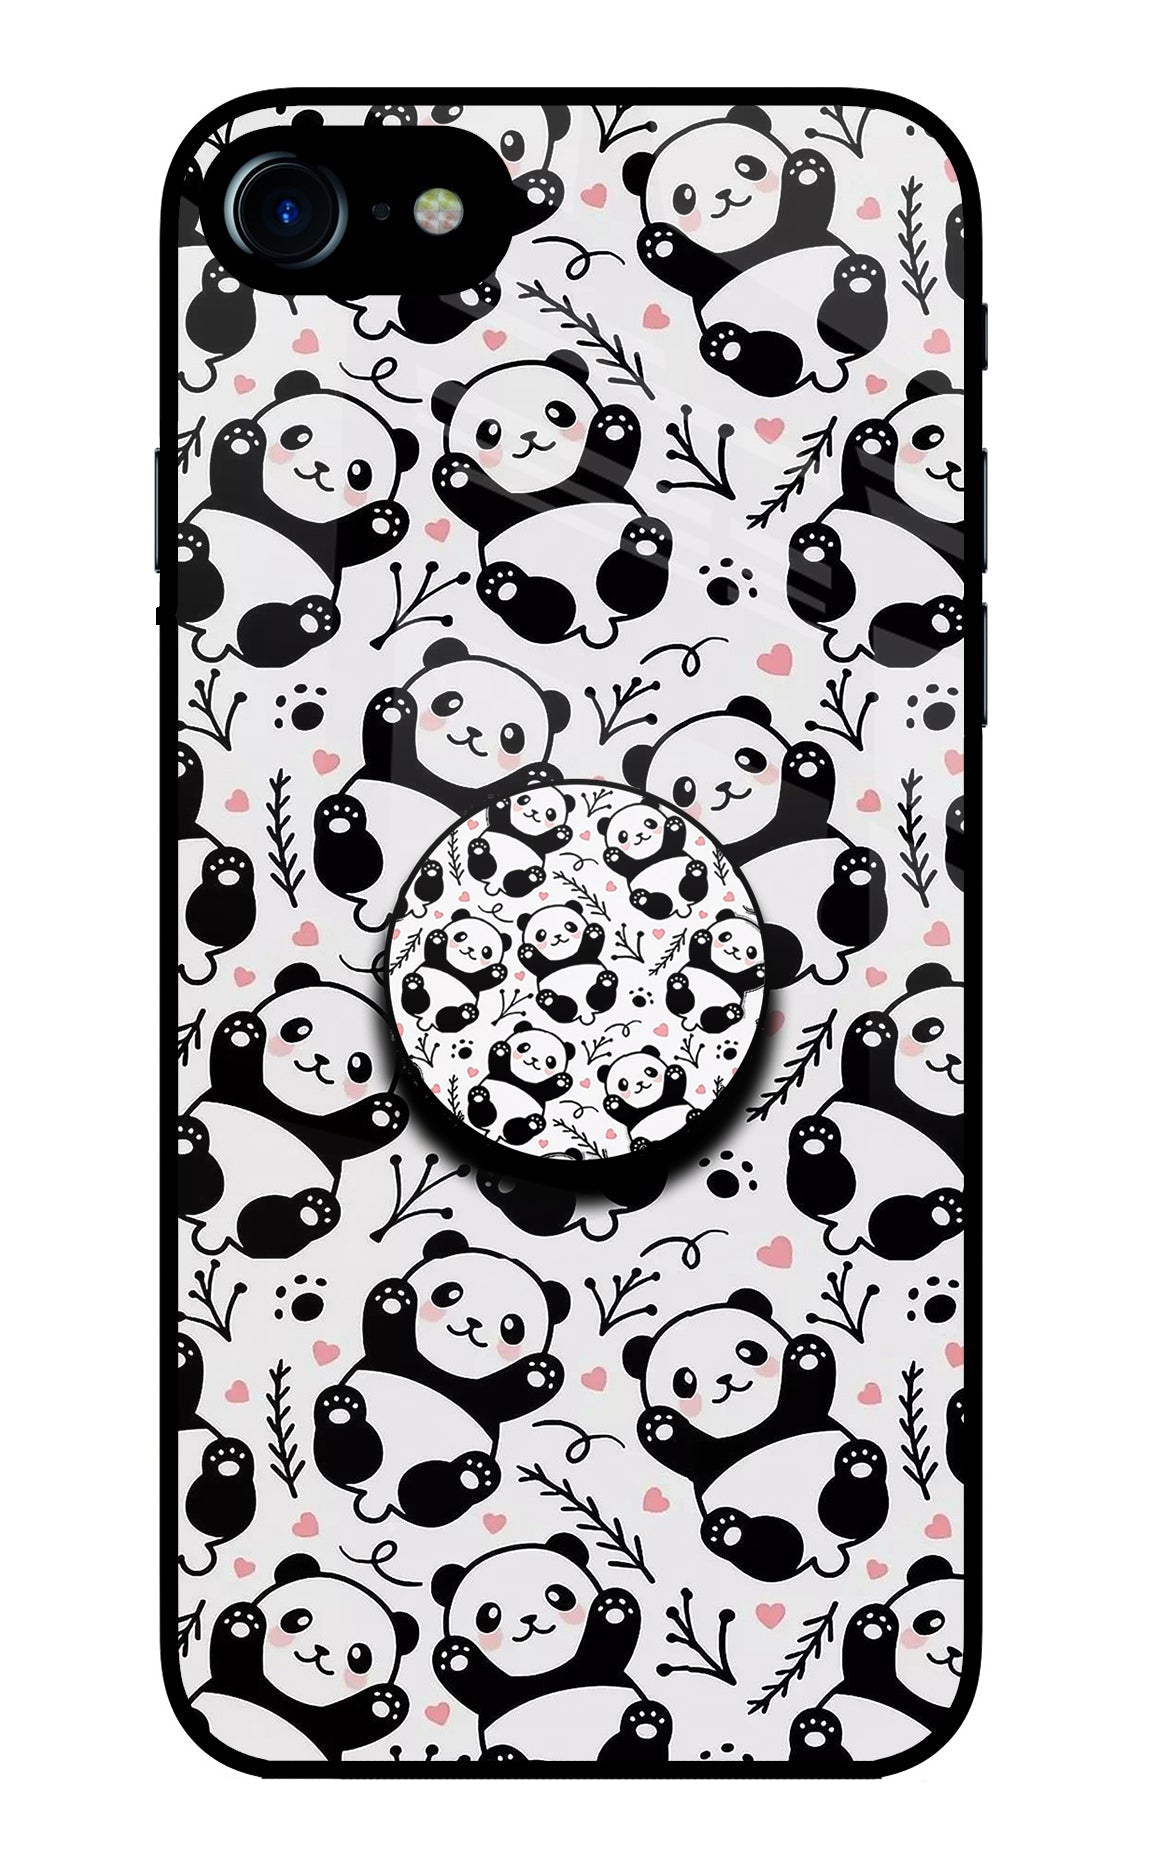 Cute Panda iPhone 7/7s Glass Case